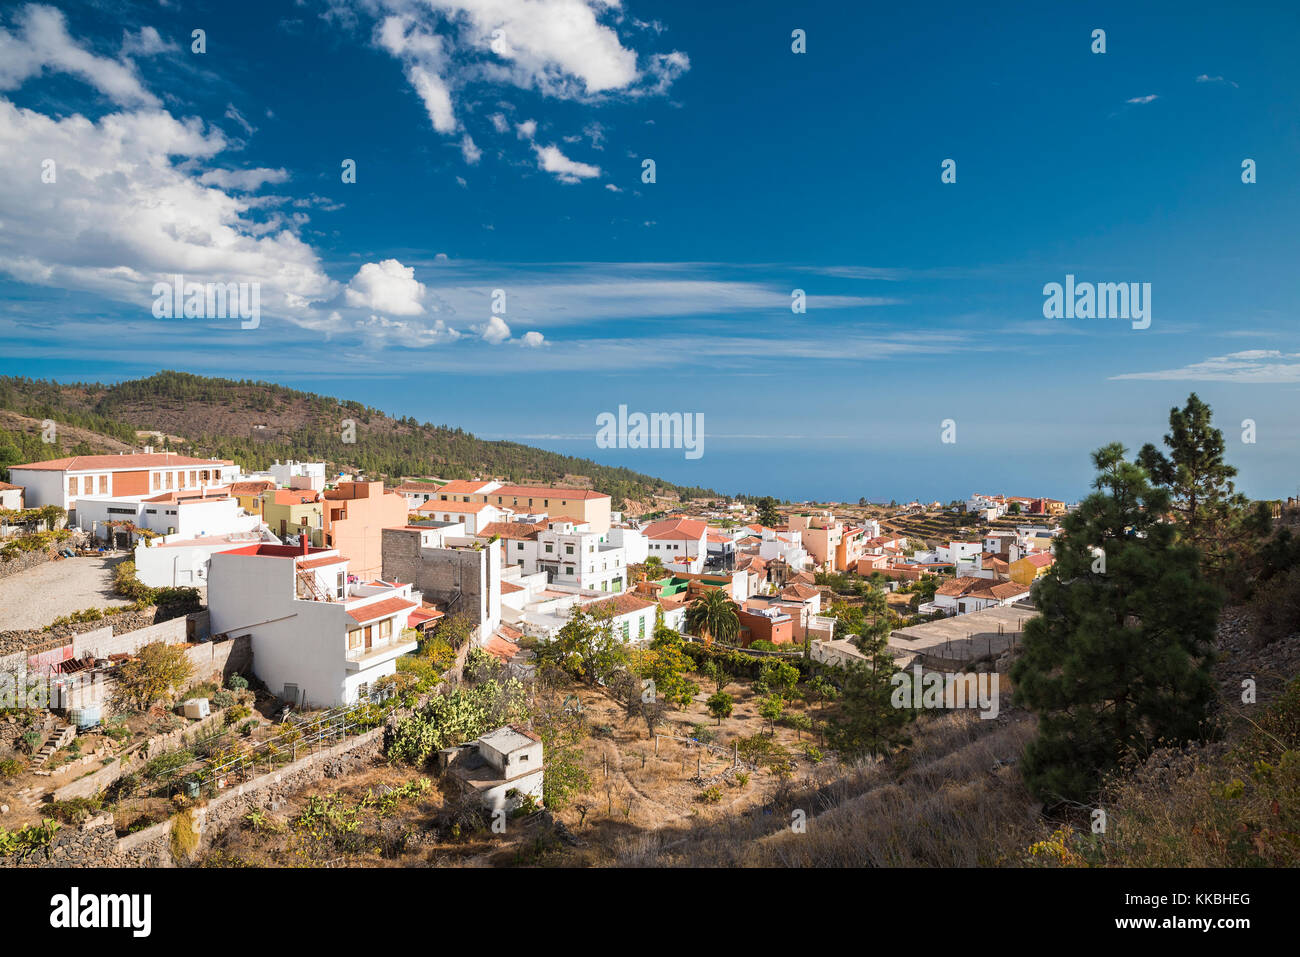 Vue sur le village de montagne de Vilaflor vers l'océan Atlantique, une destination touristique populaire sur l'île de Tenerife, Canaries, Espagne Banque D'Images